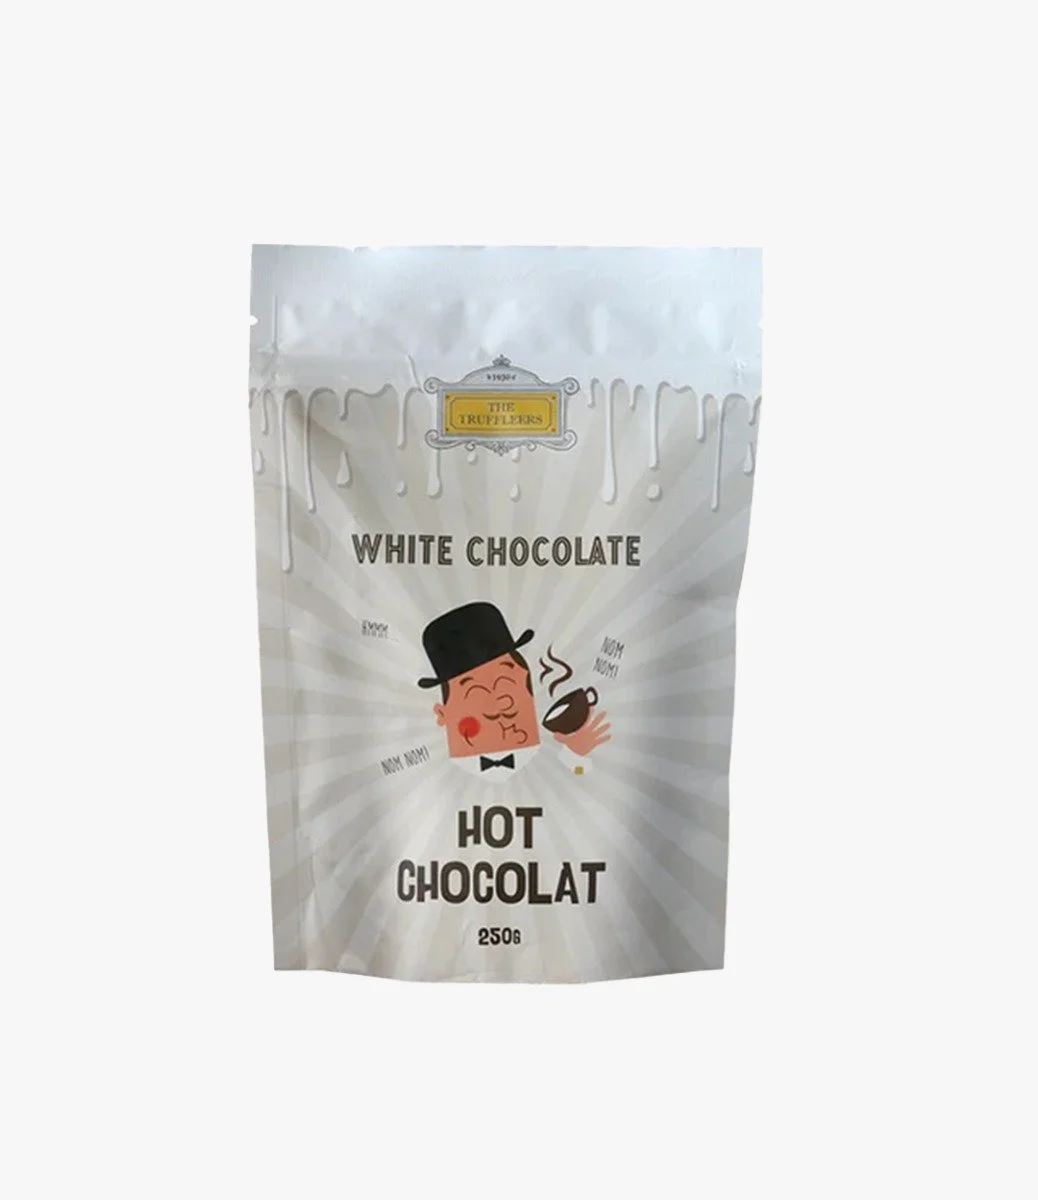 White Chocolate Parisian Hot Chocolate – 250g by Truffleers